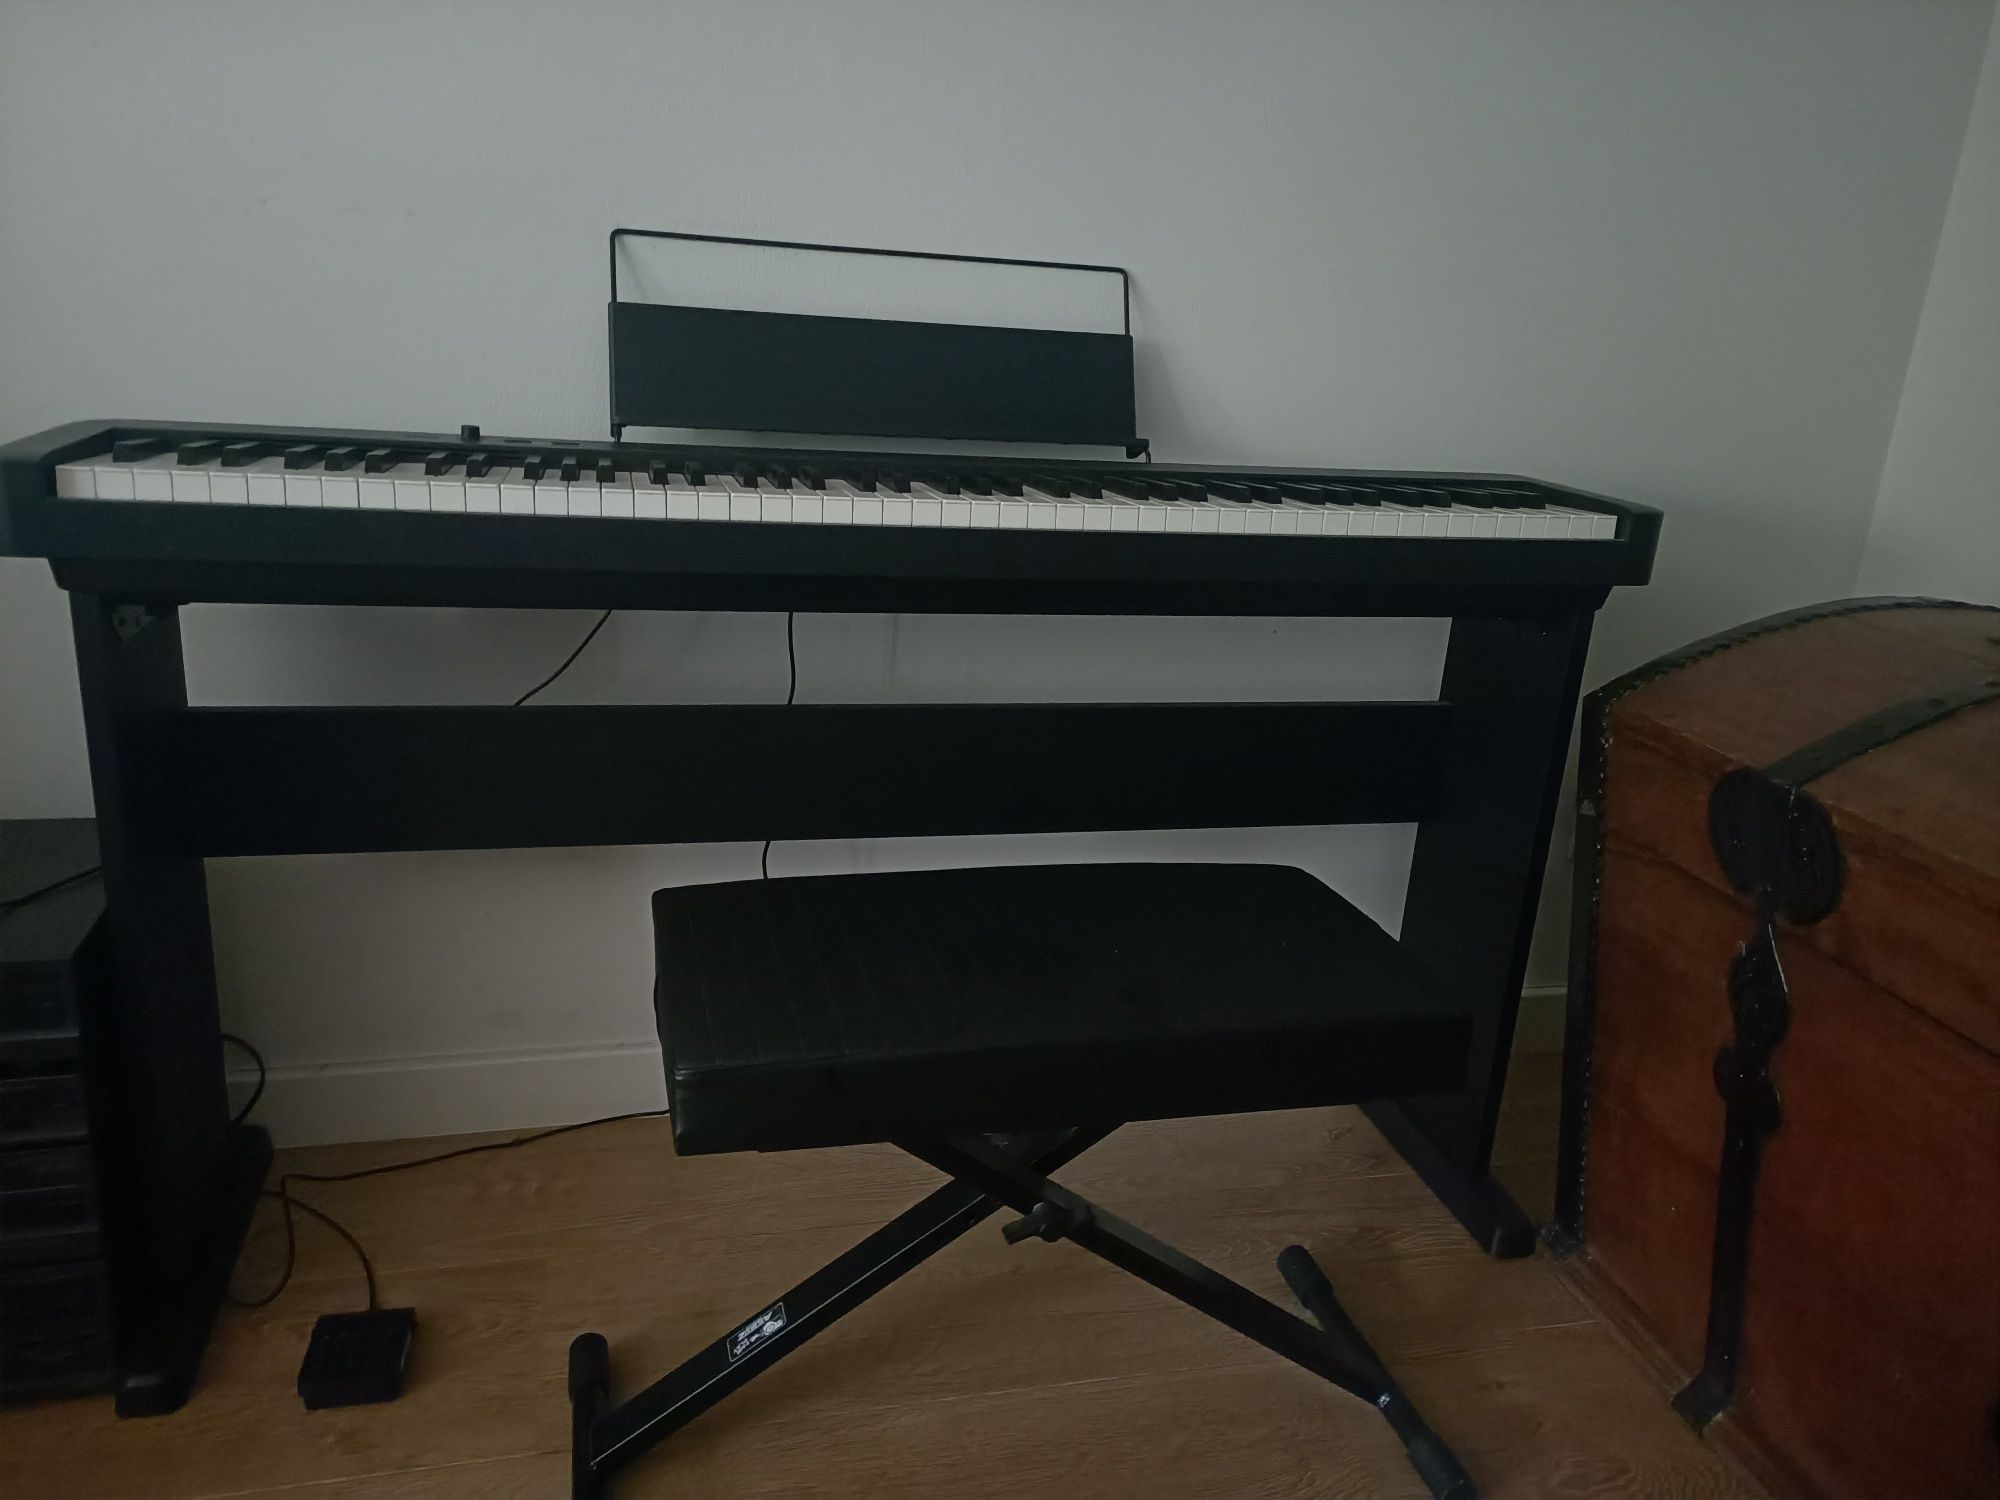 Pianino Casio CDPS-100BK z gwarancją